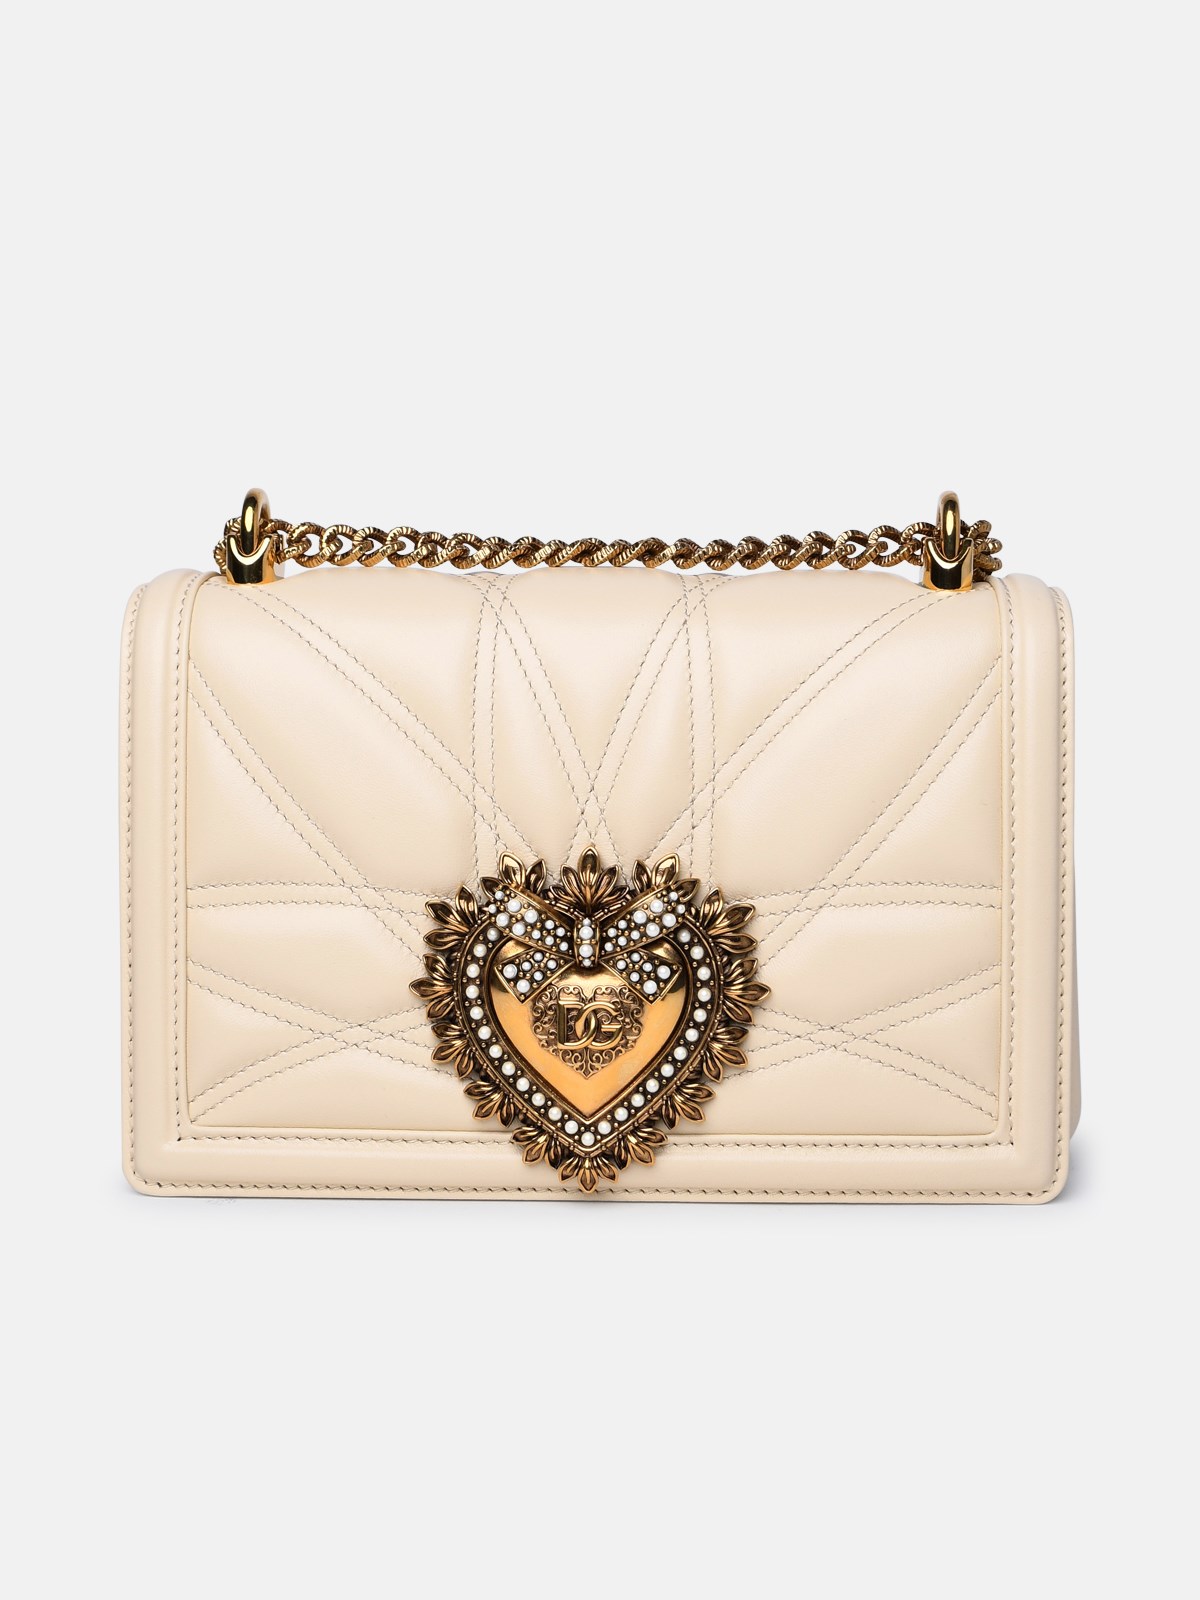 Dolce & Gabbana Cream Leather Bag